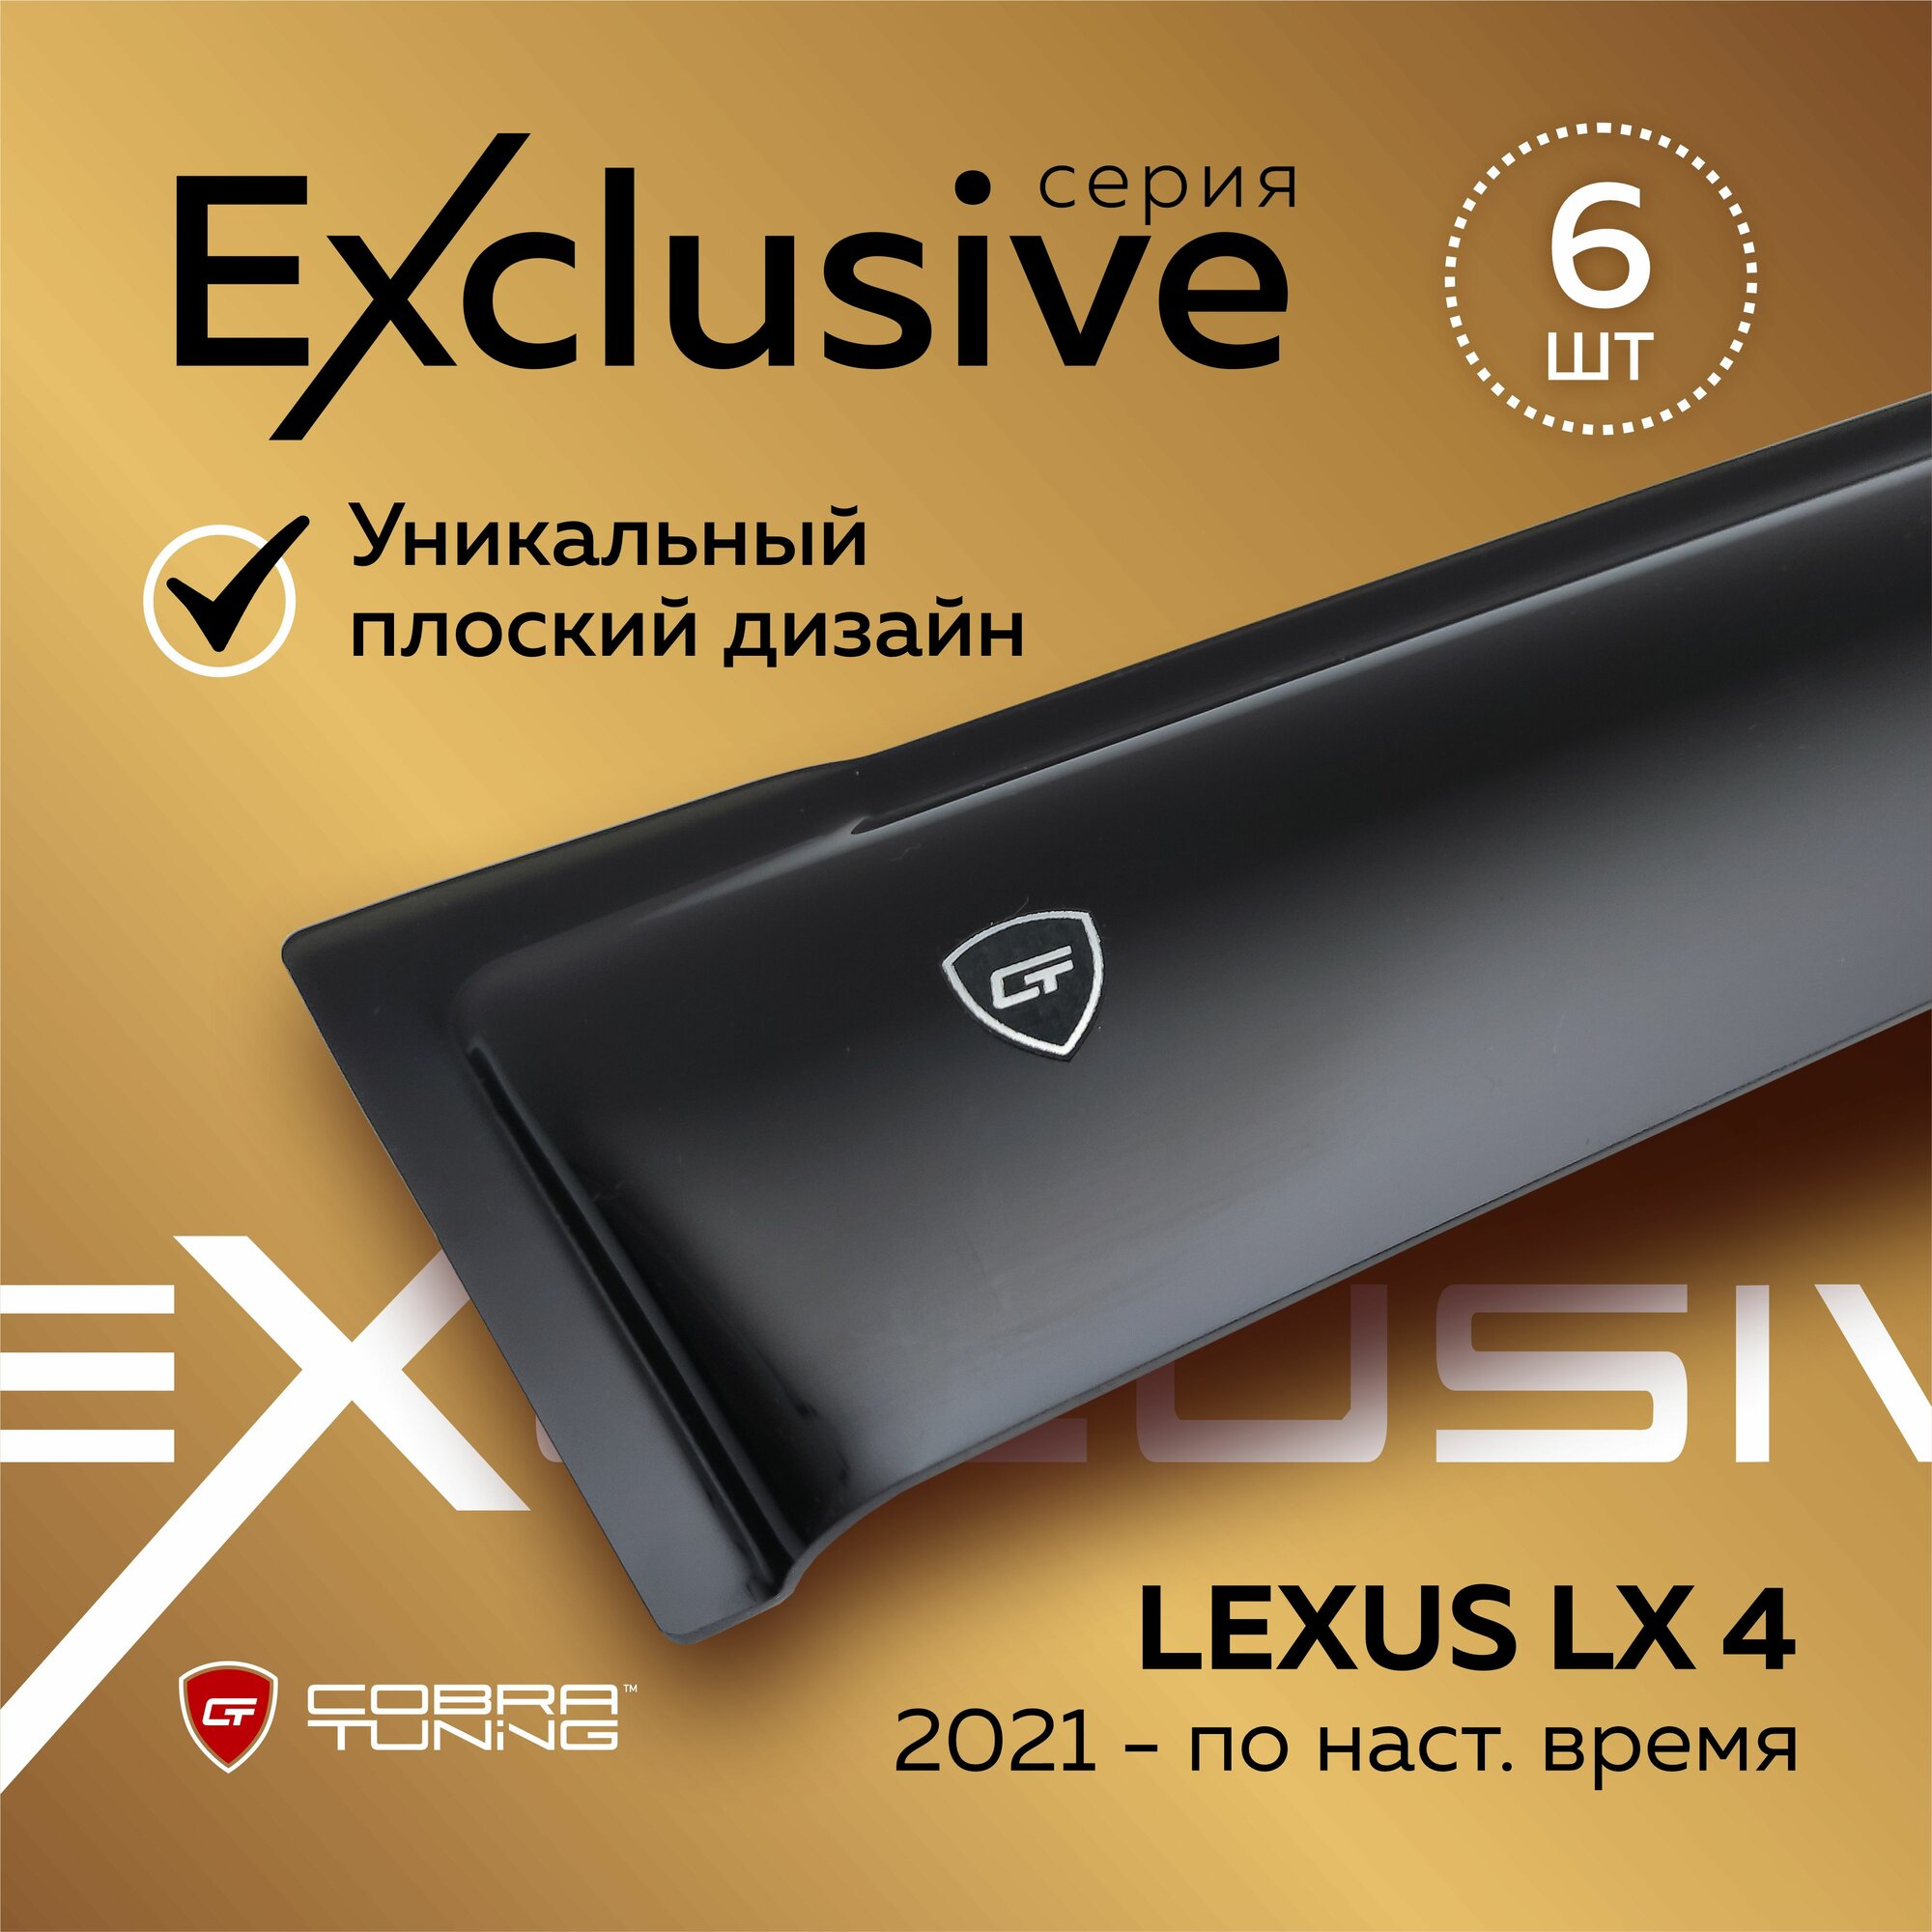 Дефлекторы боковых окон серия "Exclusive" для автомобиля Lexus LX 4 поколение (Лексус Лх) 2021, 2022, 2023, ветровики, полный комплект с уголками, 6 частей, Cobra Tuning